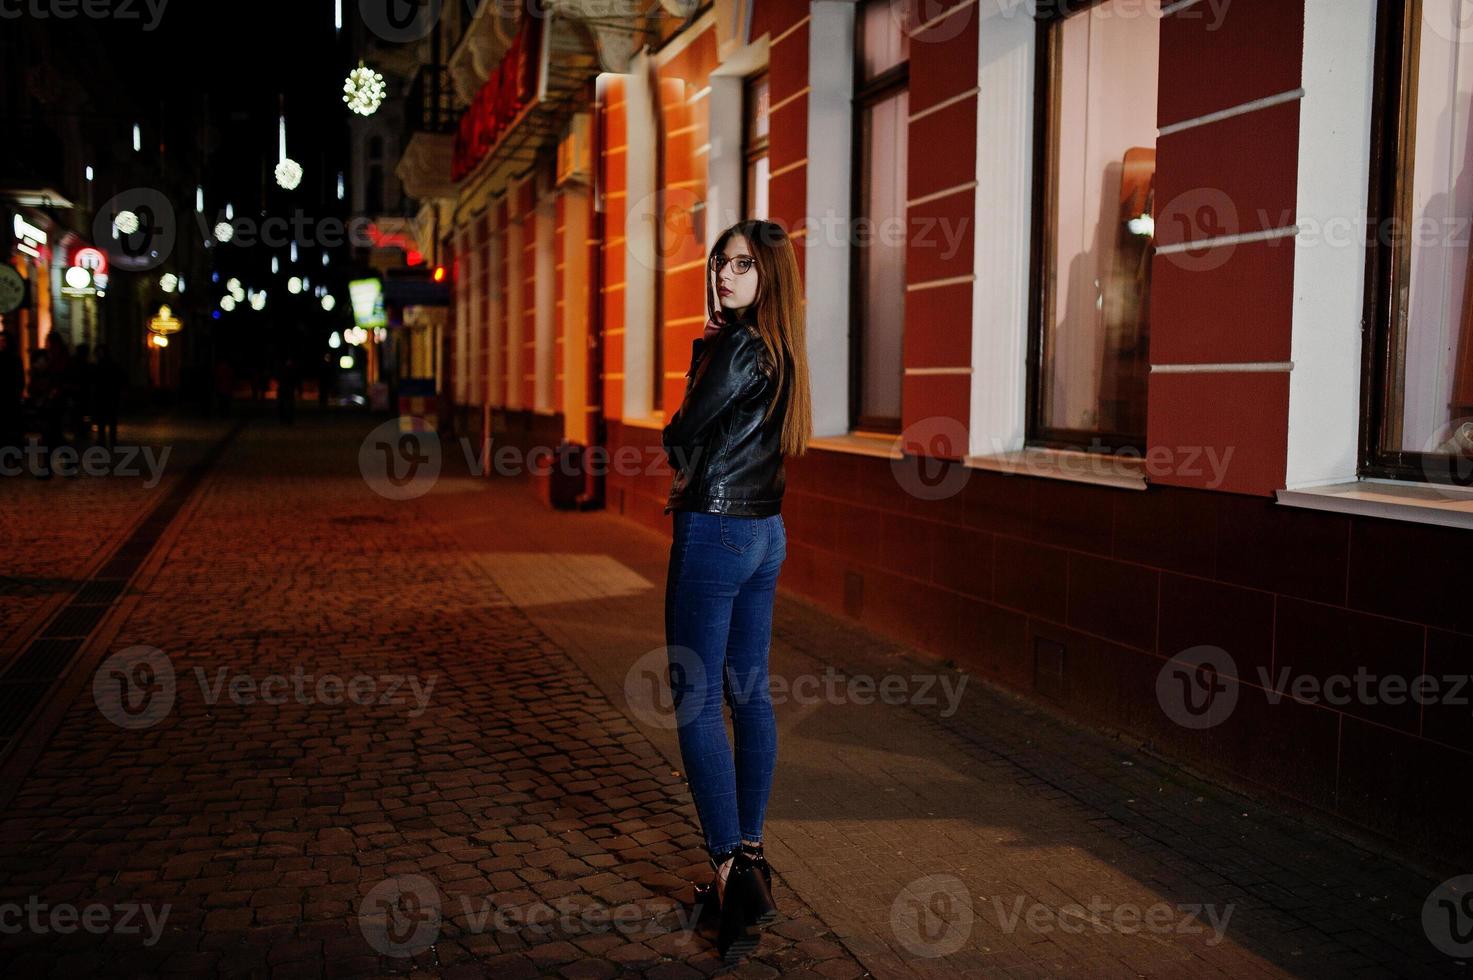 portrait de nuit du modèle de fille portant des lunettes, un jean et une veste en cuir, avec sac à dos, contre les rues de la ville. photo